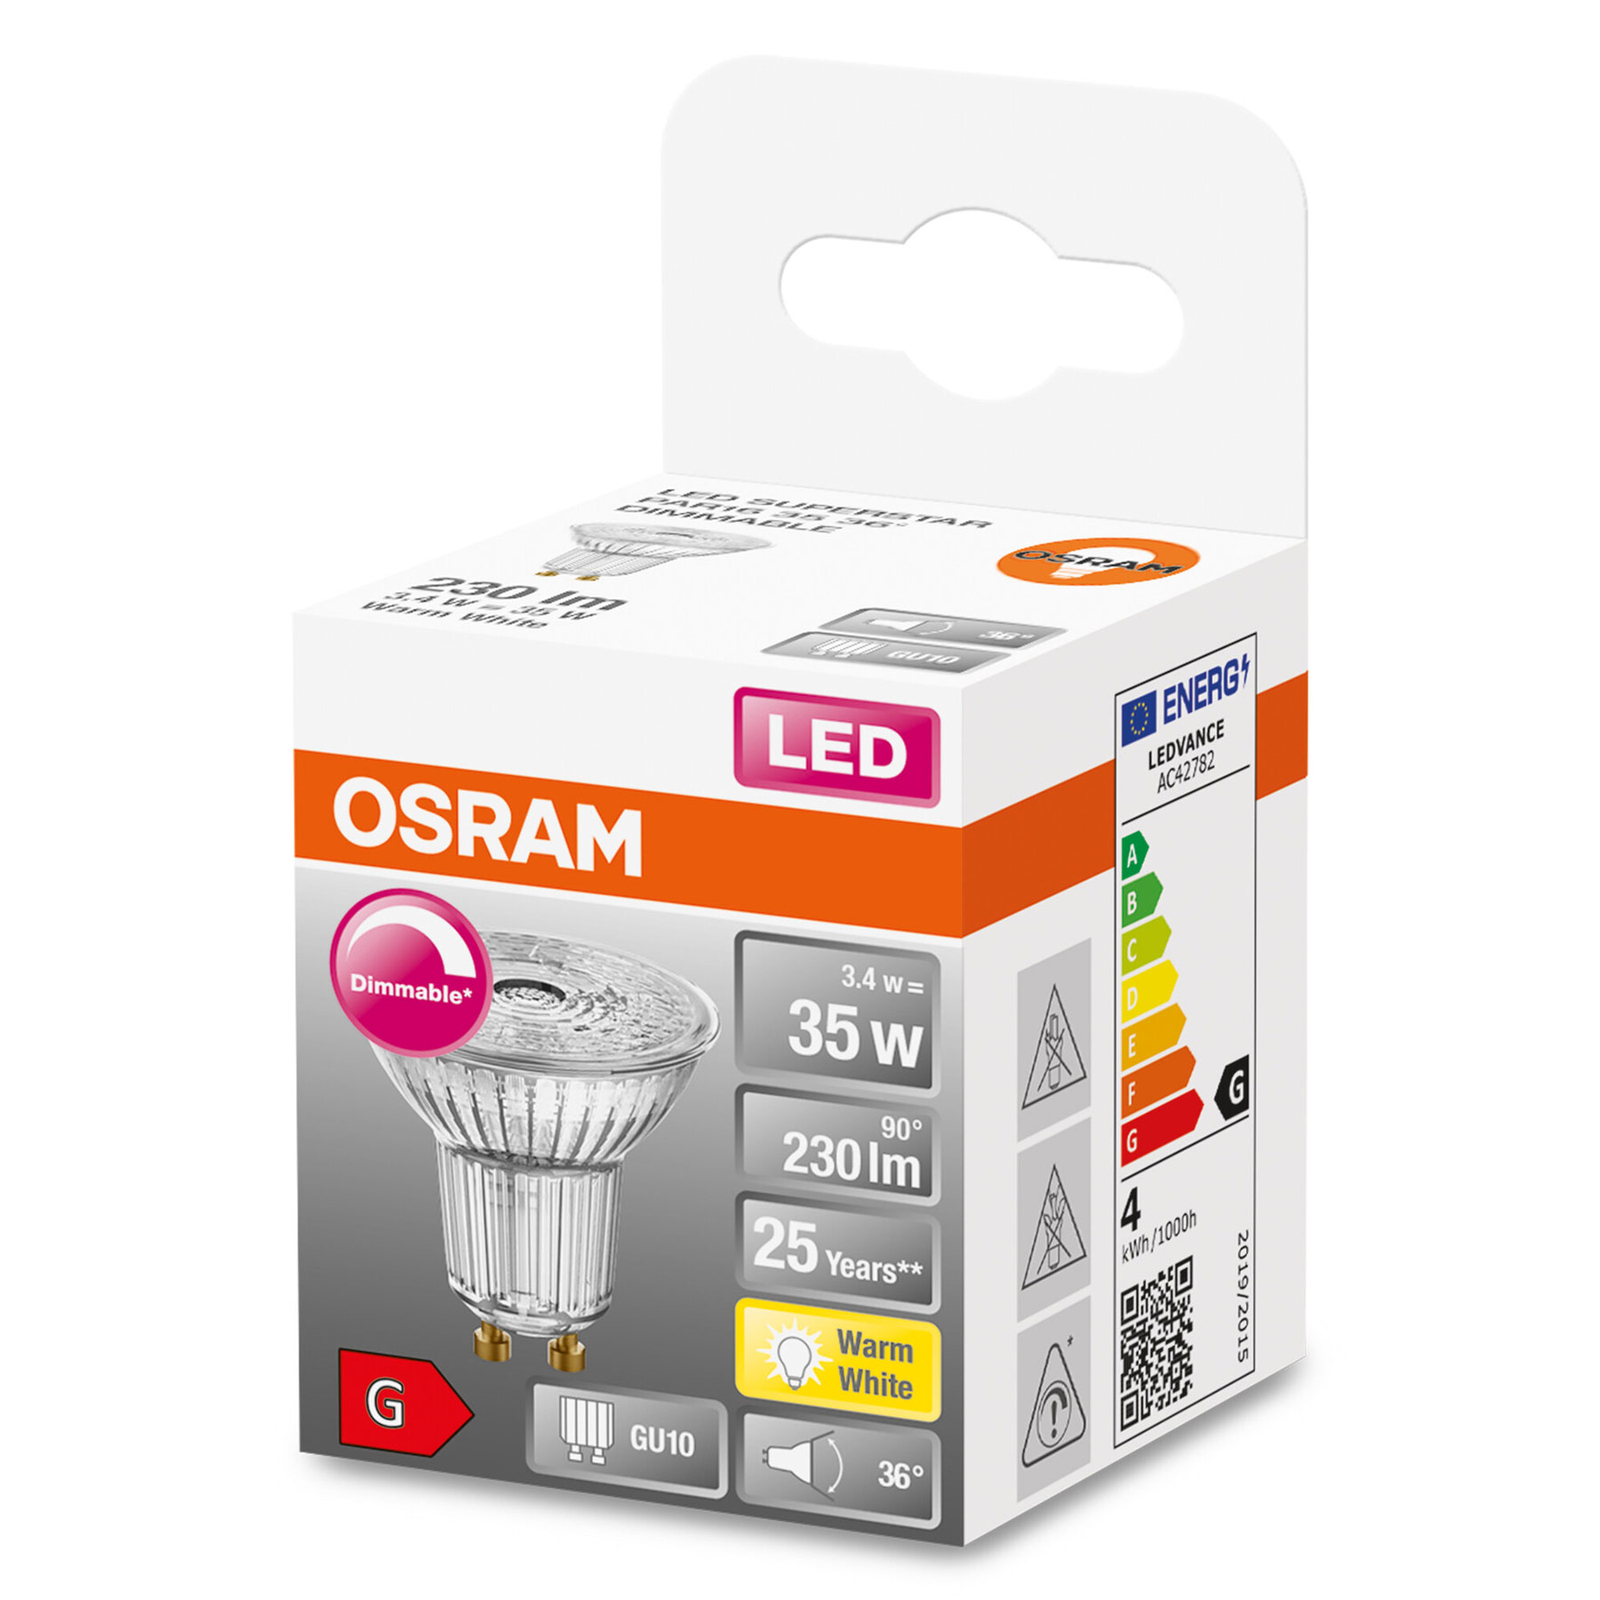 OSRAM LED glass reflector GU10 3.4W 927 36° dim